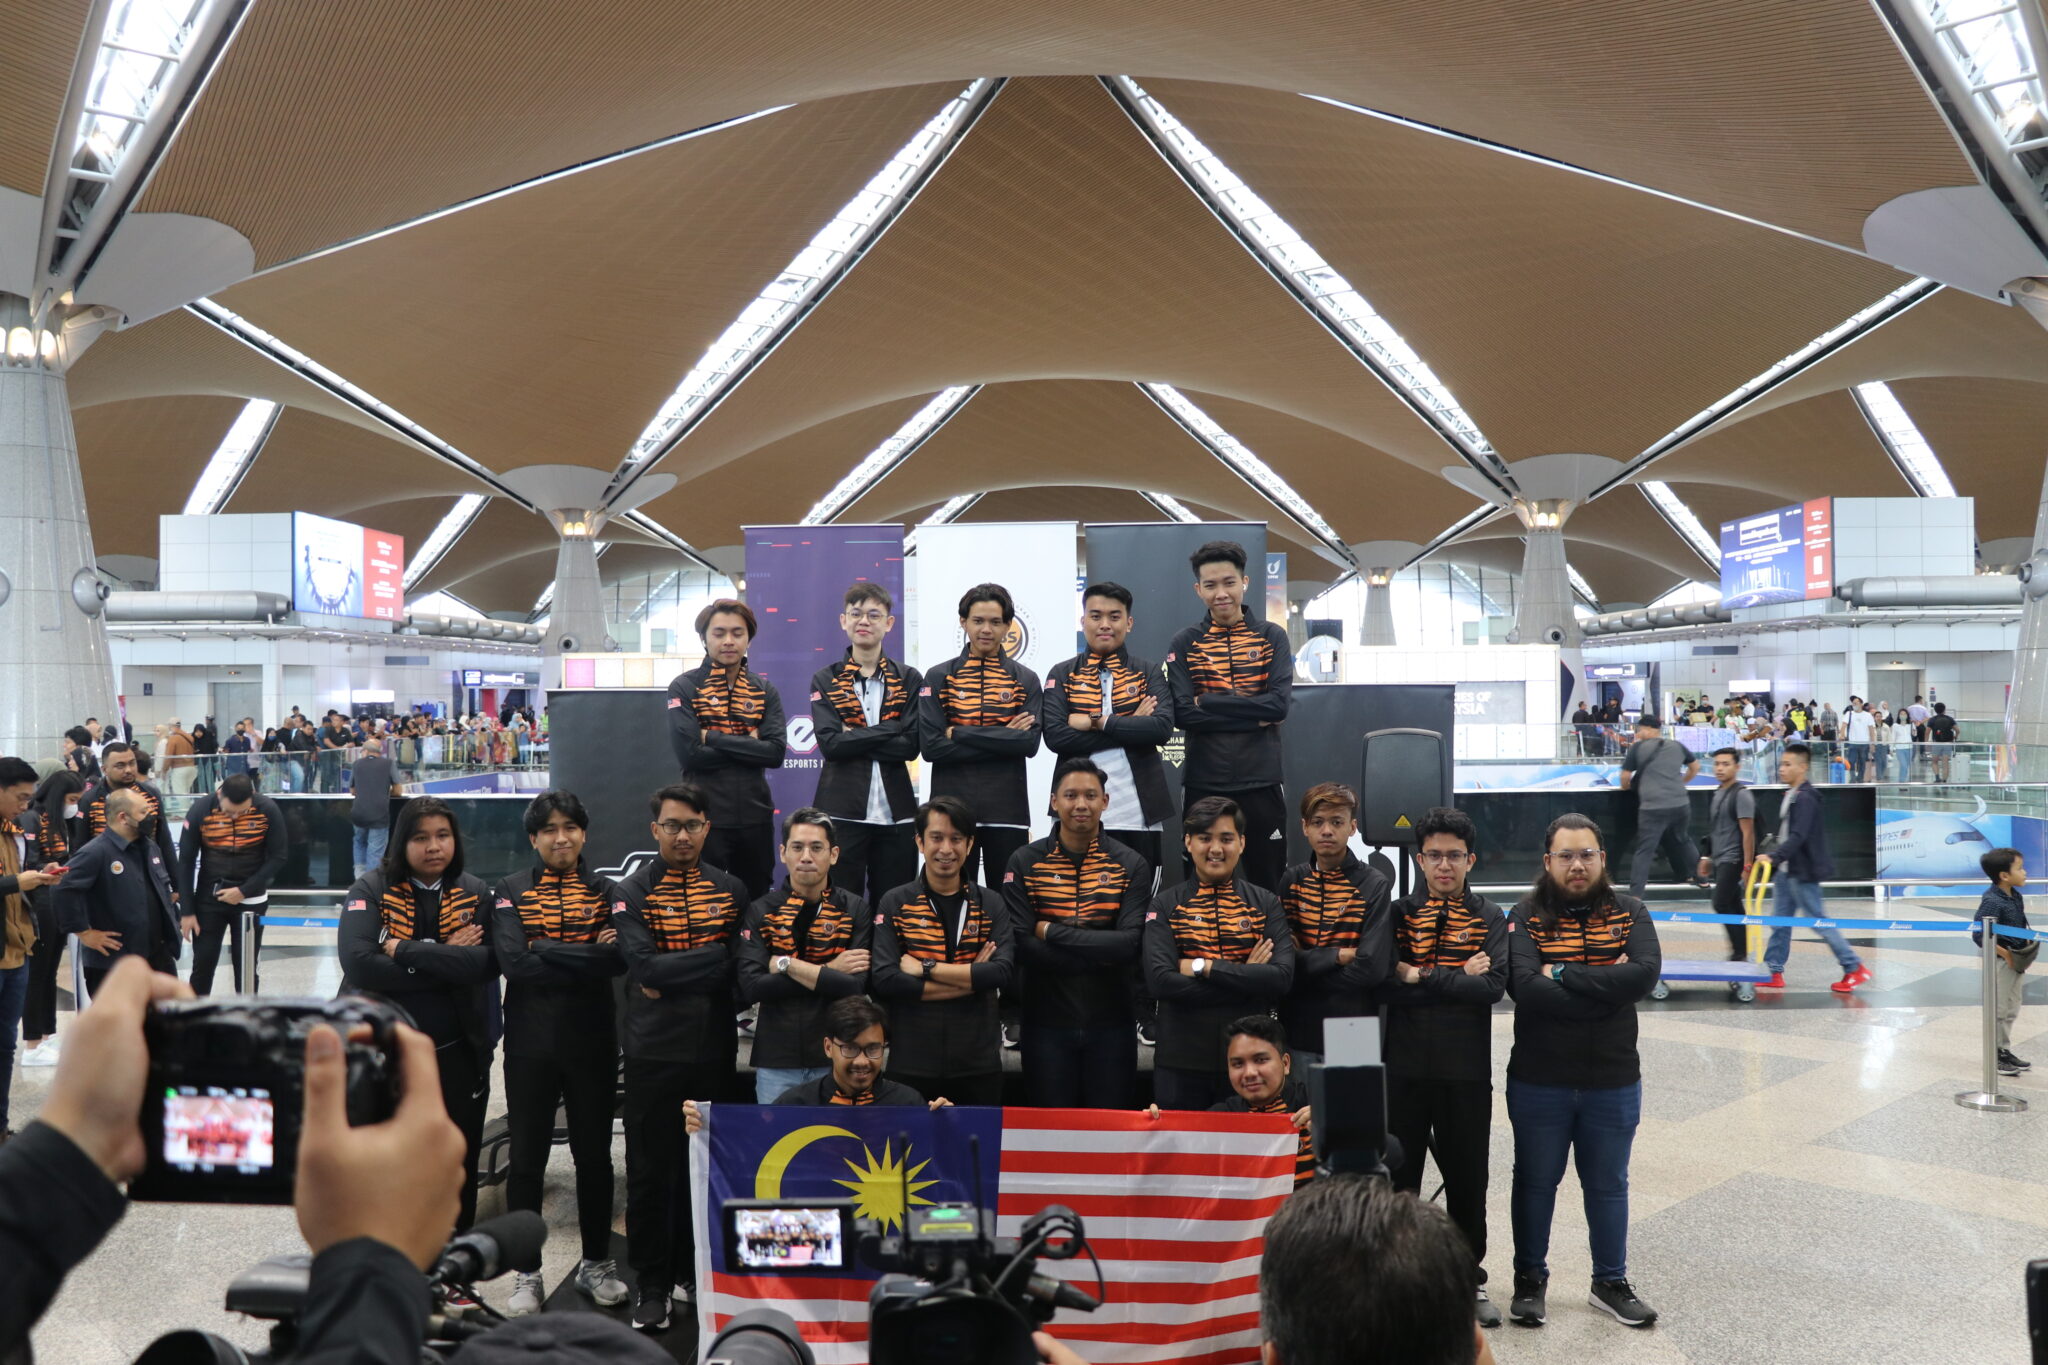 Deux équipes M’sian s’affrontent pour un prize pool de 3,5 millions de RM au championnat du monde M4